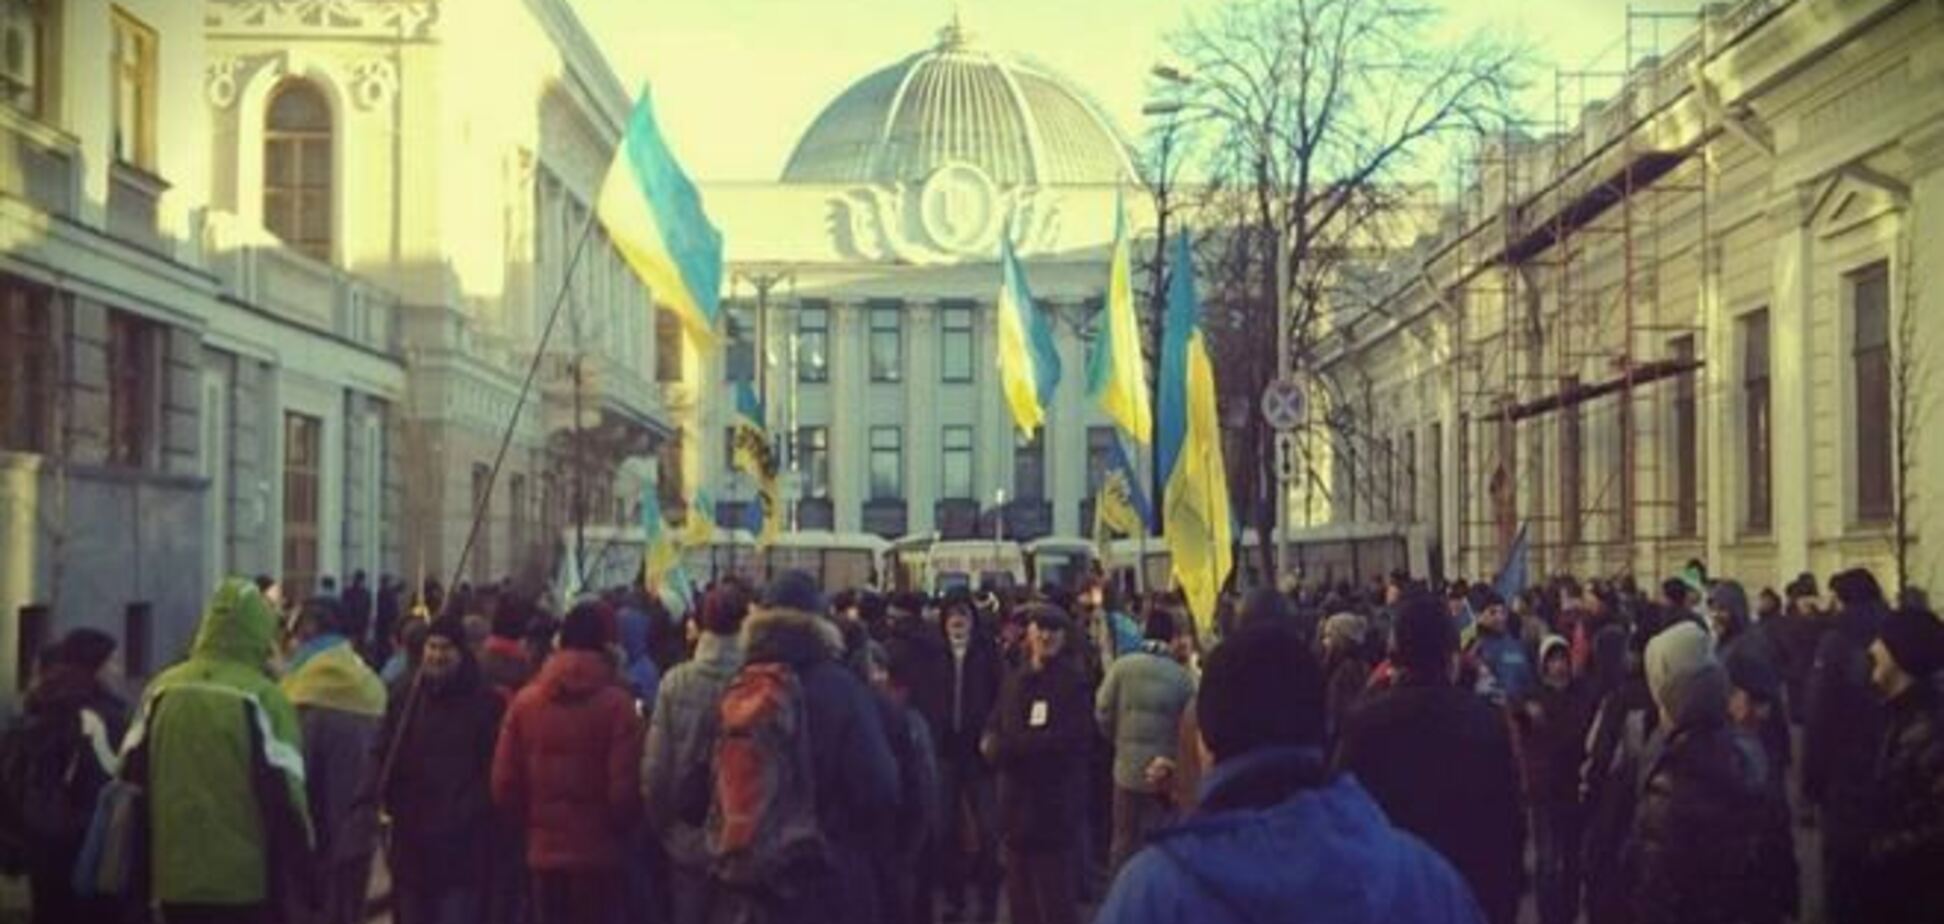 Почти 45% украинцев не поддерживают блокирование админзданий - опрос